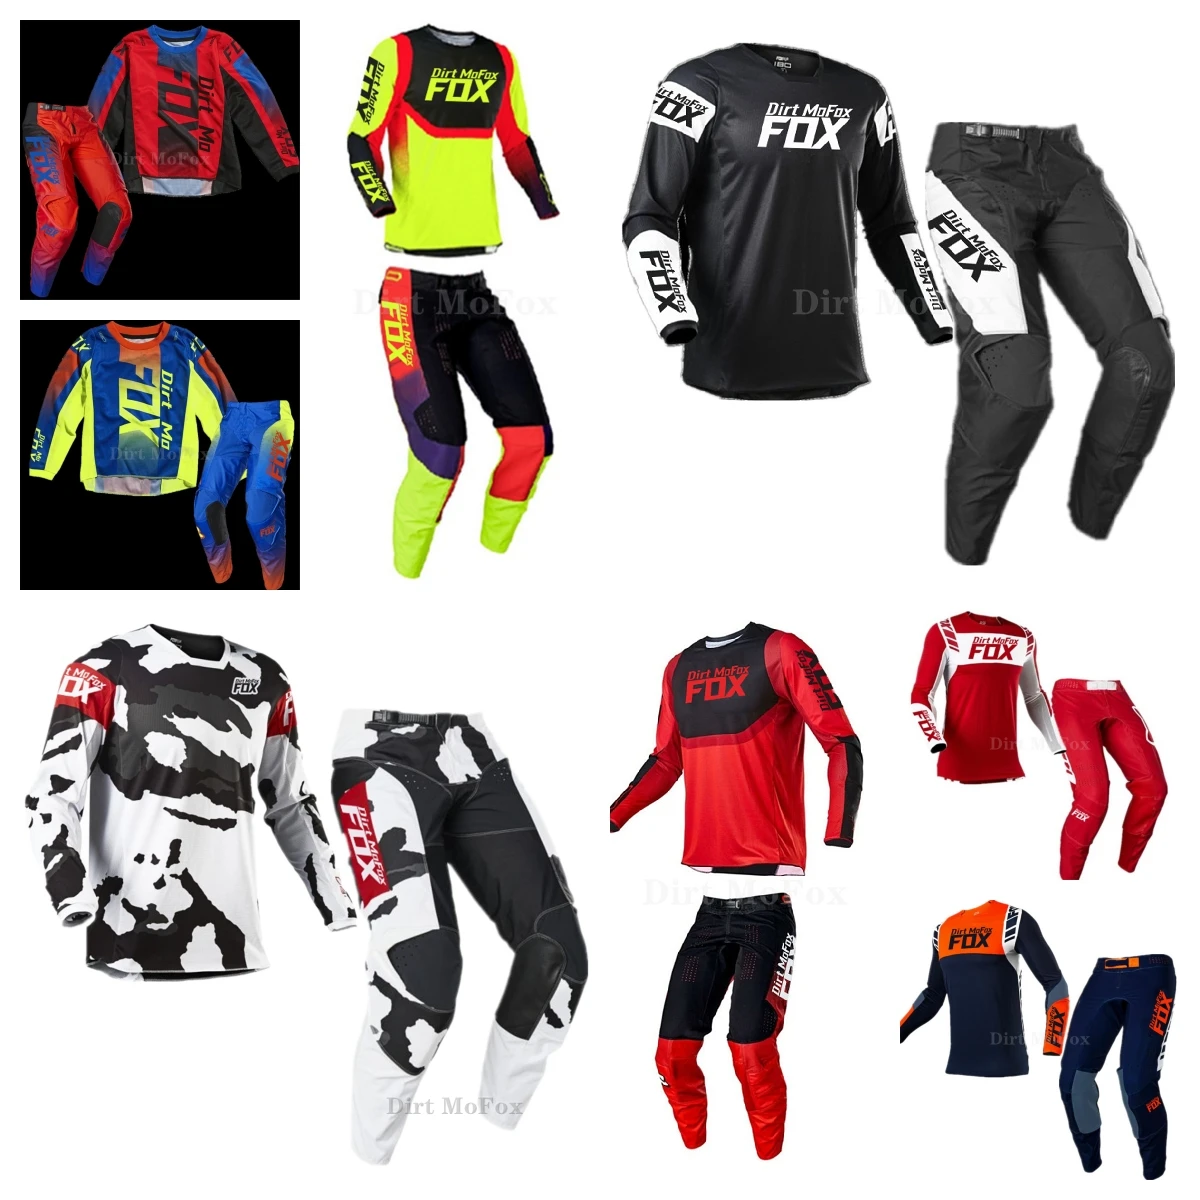 NEW Racing 2021 Dirt Mo MX 180 Cota Blue Motocross Jersey And Pants Adult Motocr - £264.79 GBP